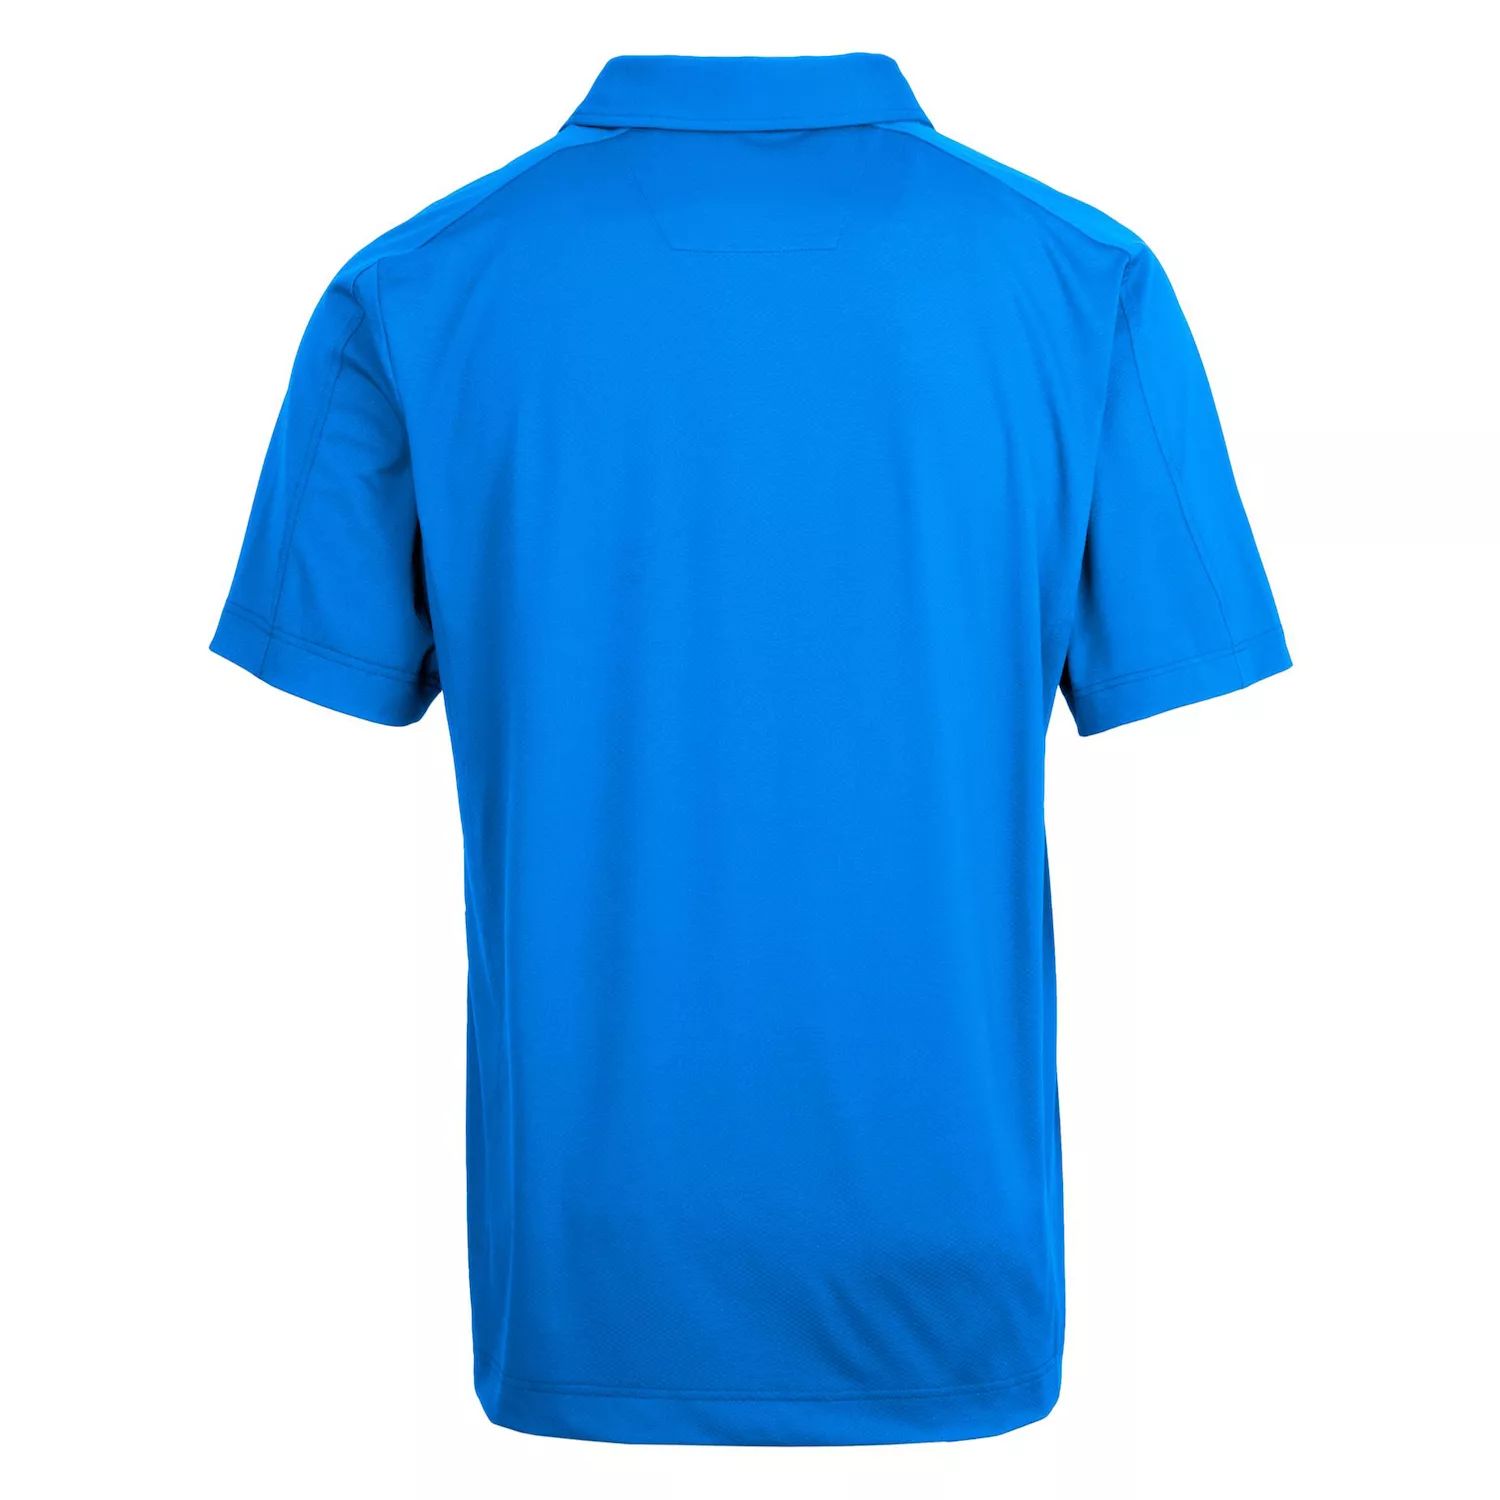 Мужская футболка-поло с короткими рукавами и фактурной текстурой Prospect Cutter & Buck brabantia pizza cutter plus blade guar dark grey